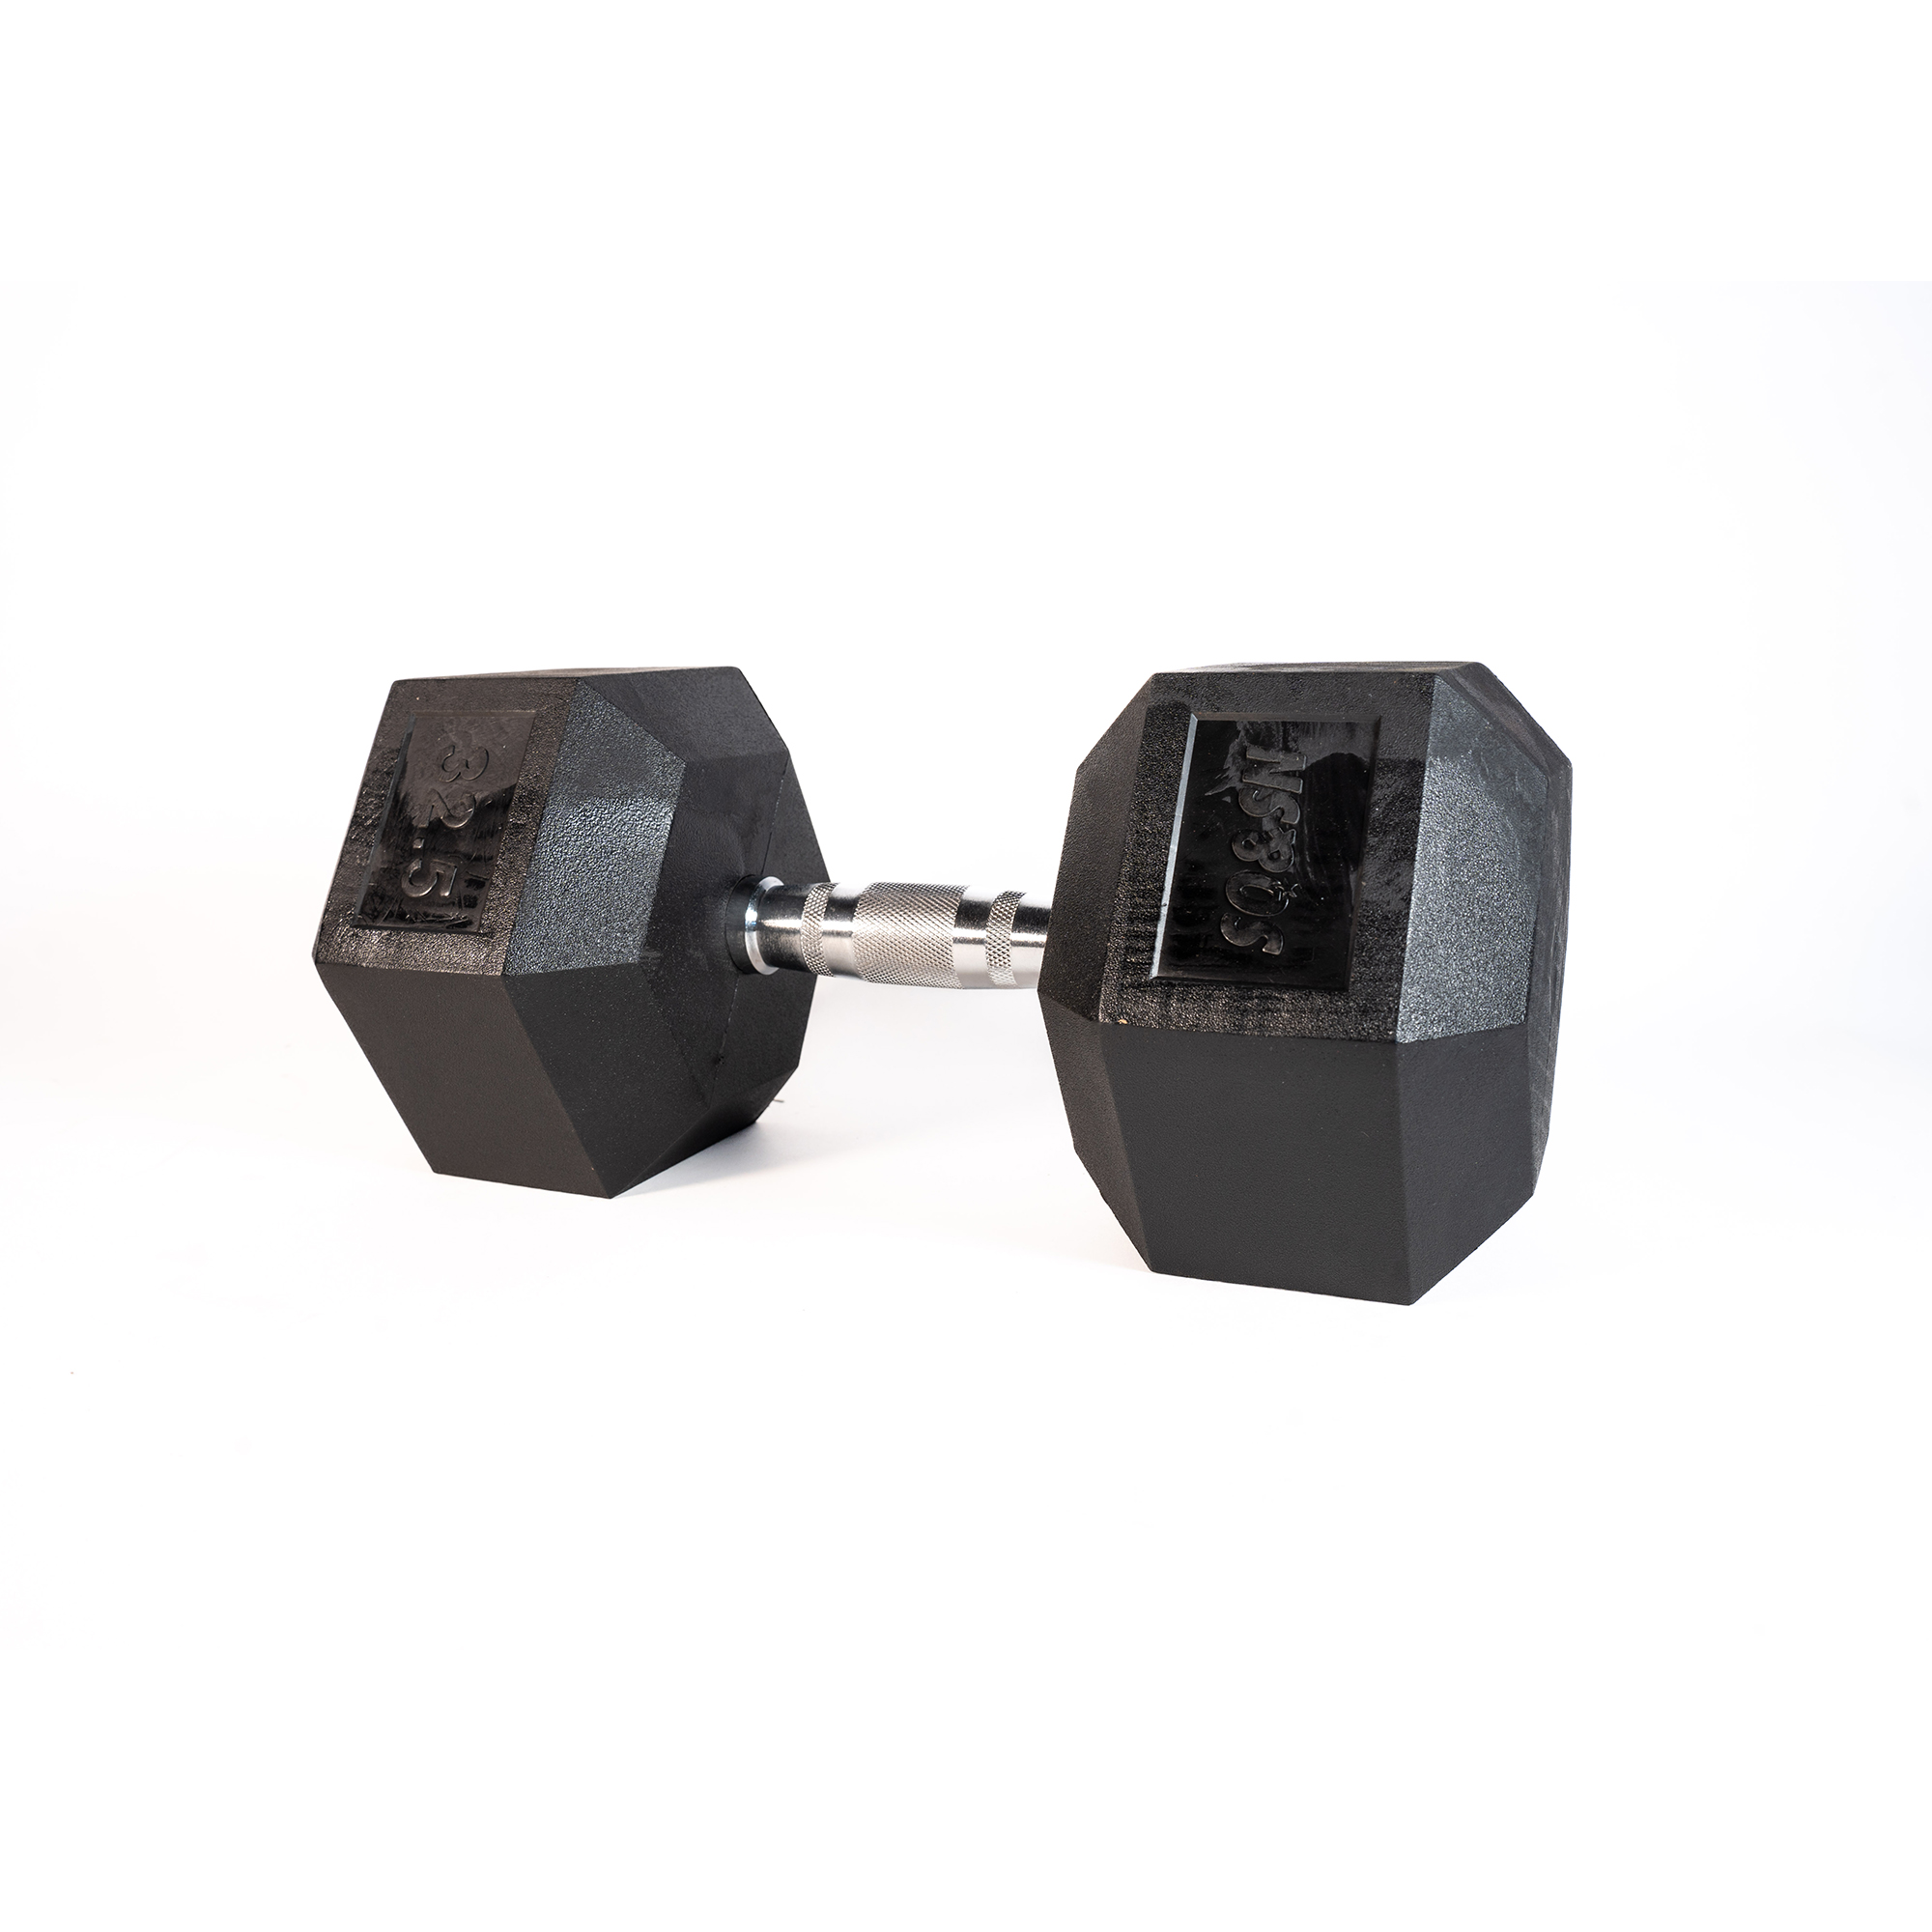 Brug SQ&SN Hexagon Håndvægt (32,5 kg) med forkromet greb. Udstyr til crossfit træning, styrketræning og funktionel træning til en forbedret oplevelse